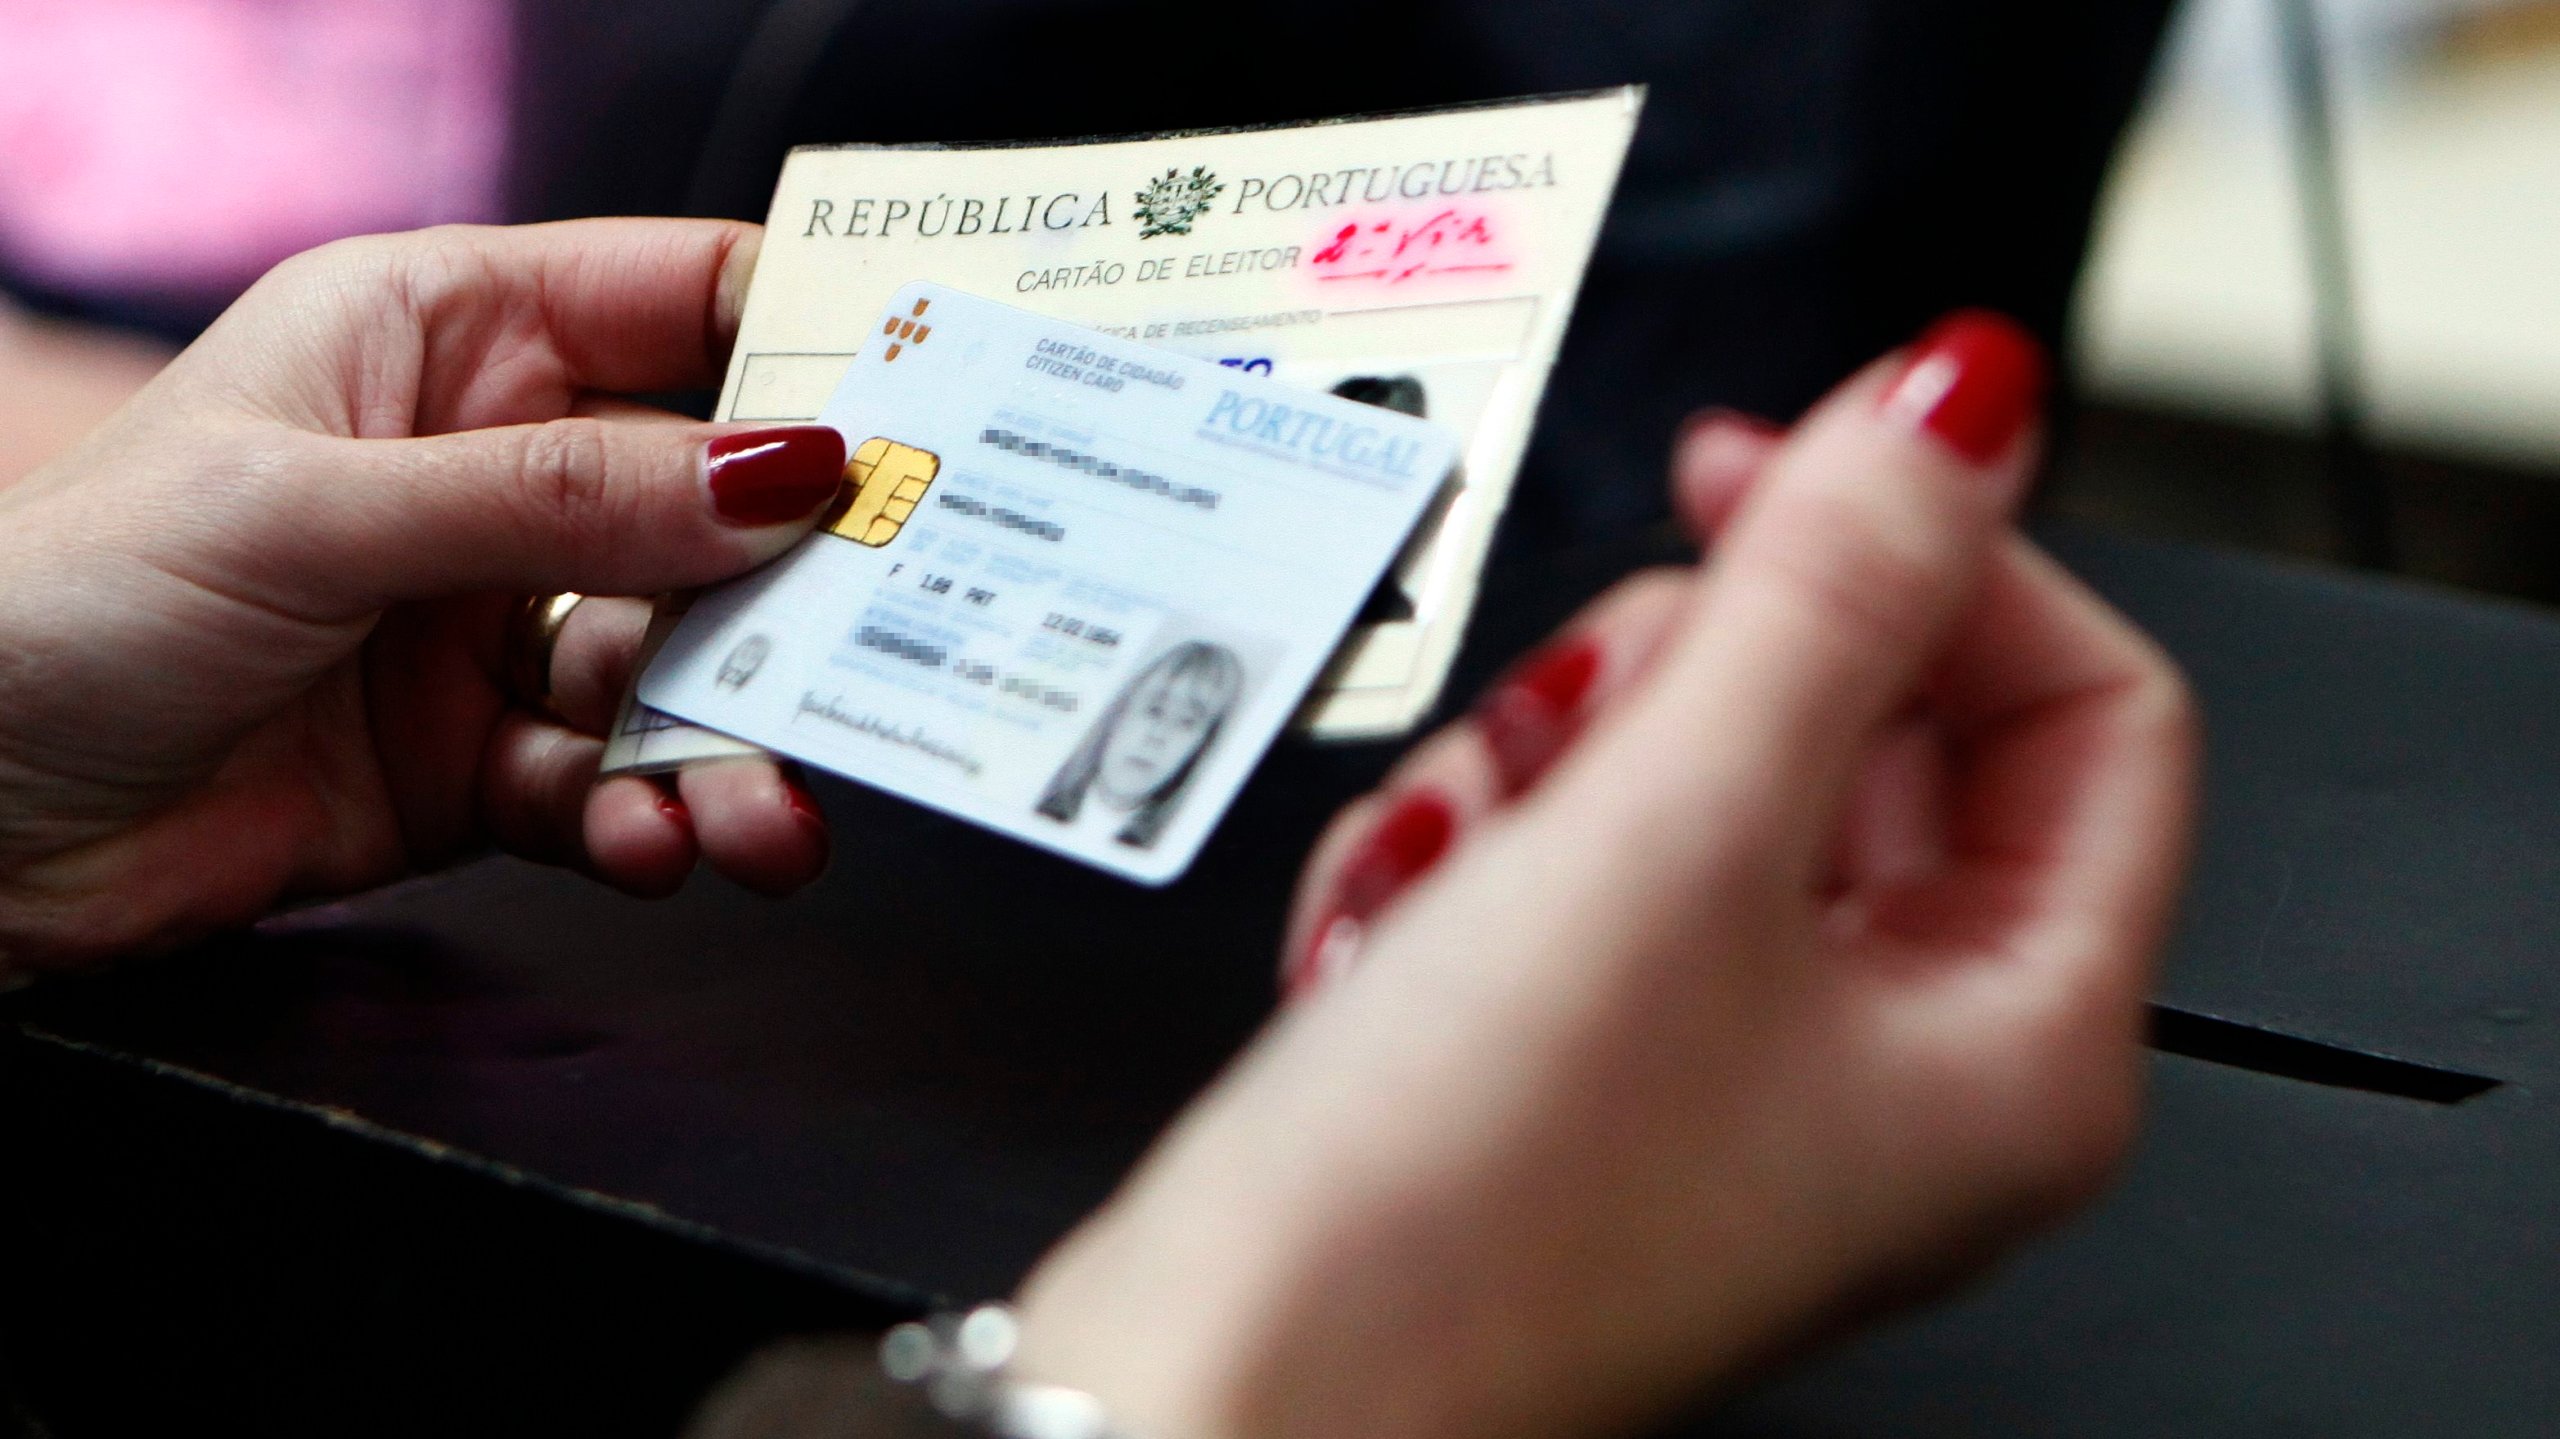 Um eleitor com o cartão de cidadão e cartão de eleitor aguarda boletim de voto para votar nas Eleições Presidenciais 2011, em Lisboa, 23 de janeiro de 2011. JOAO RELVAS/LUSA